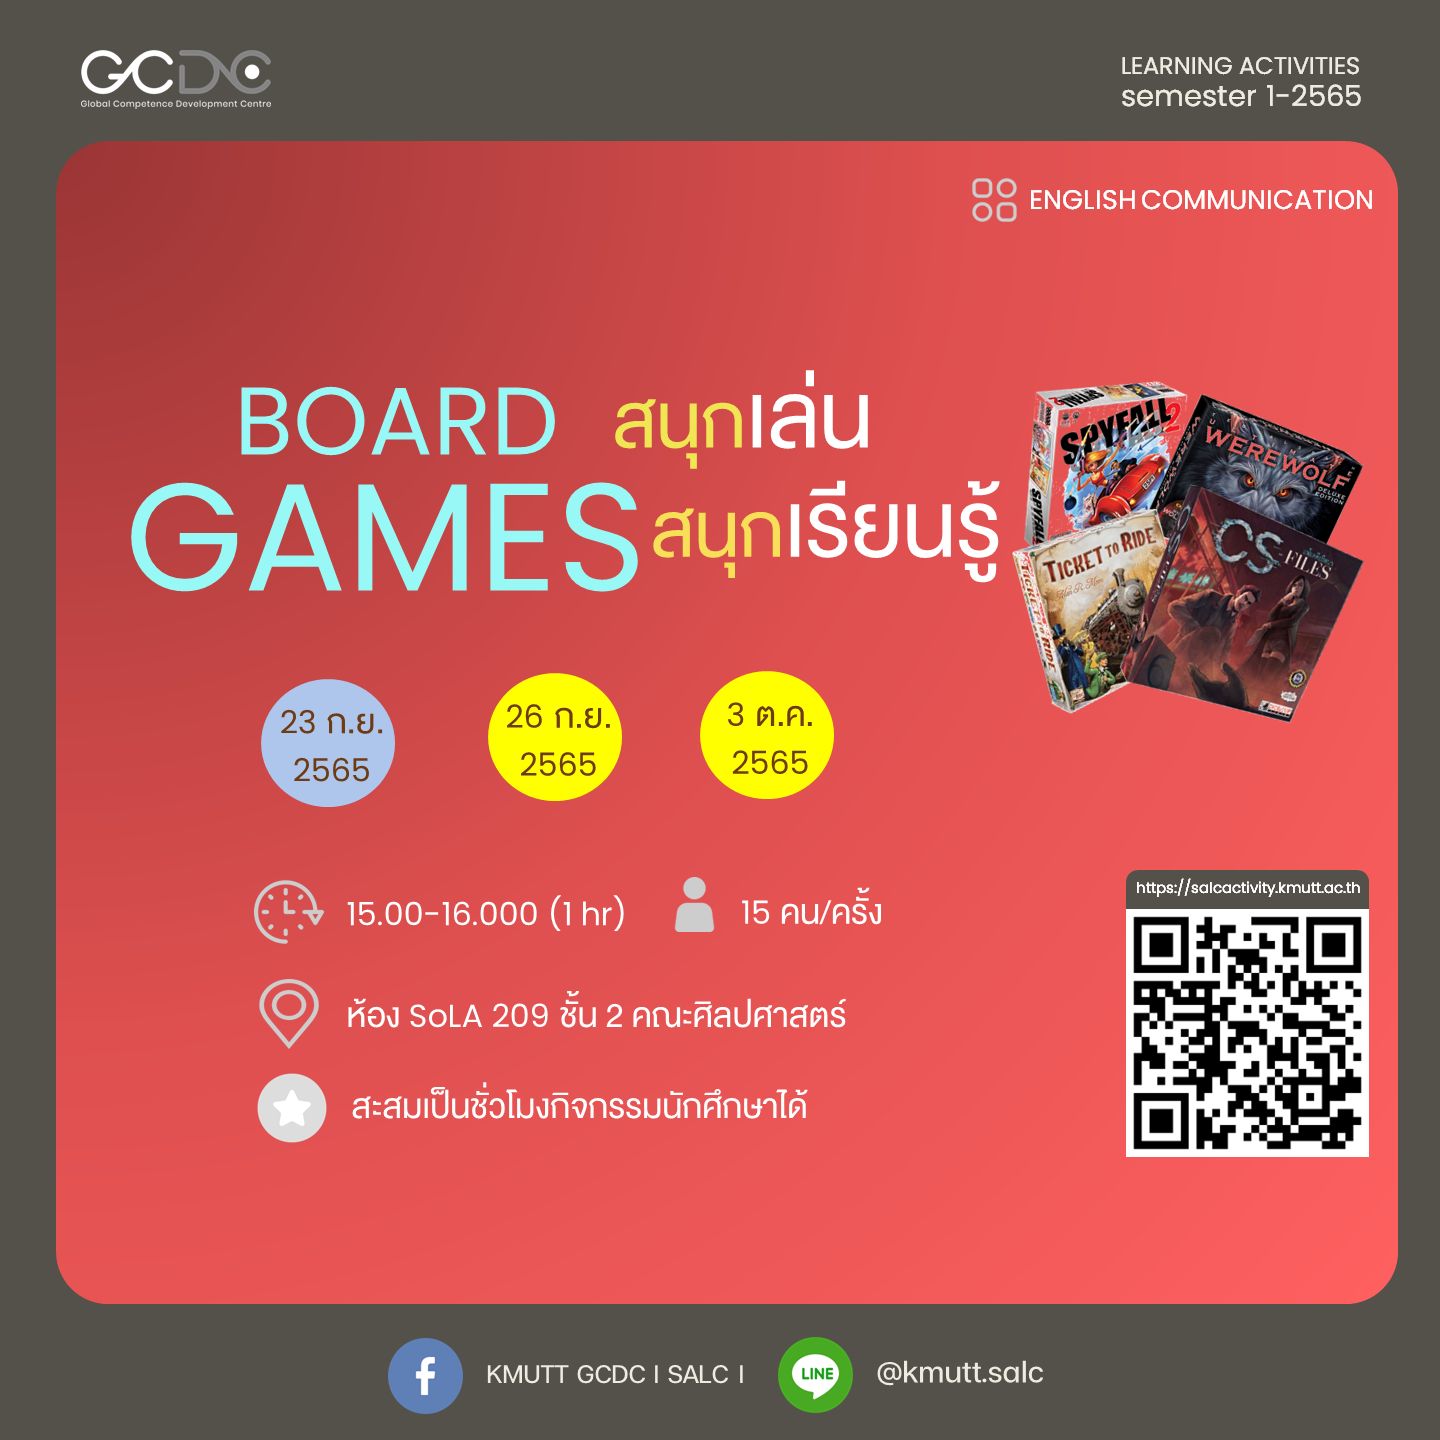 กิจกรรม: Board Games